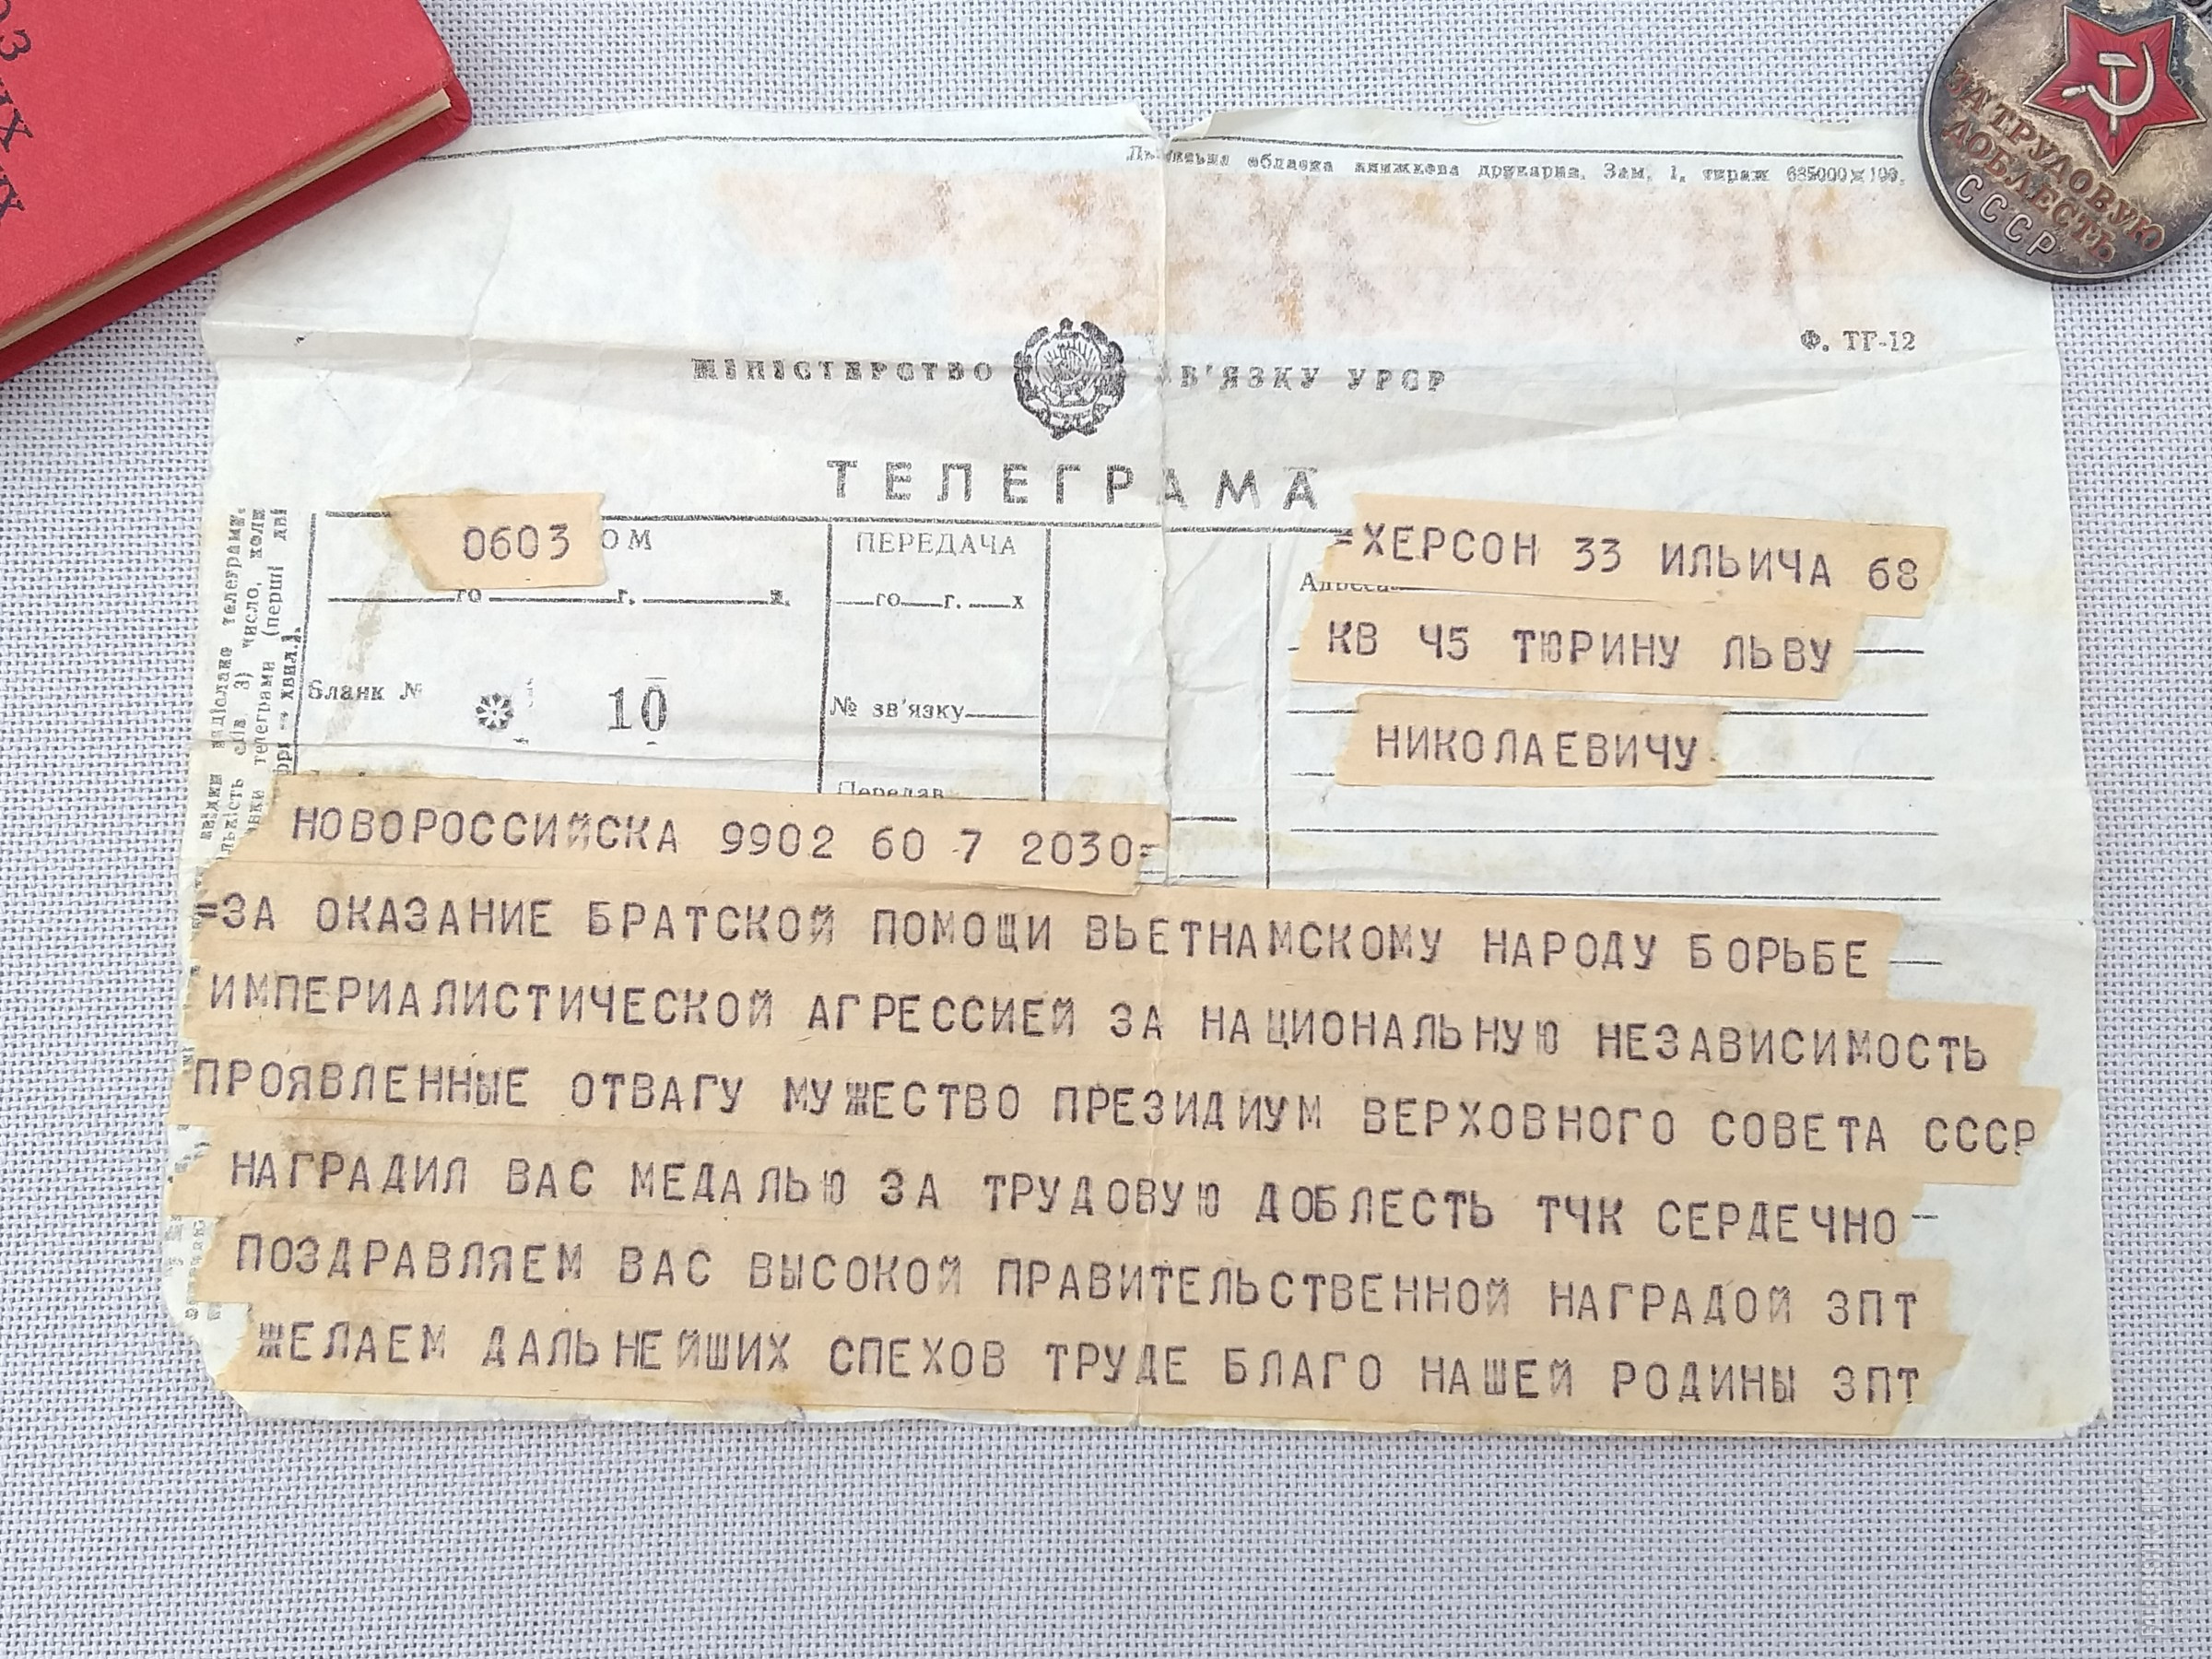 Русский язык как написать телеграмму фото 116